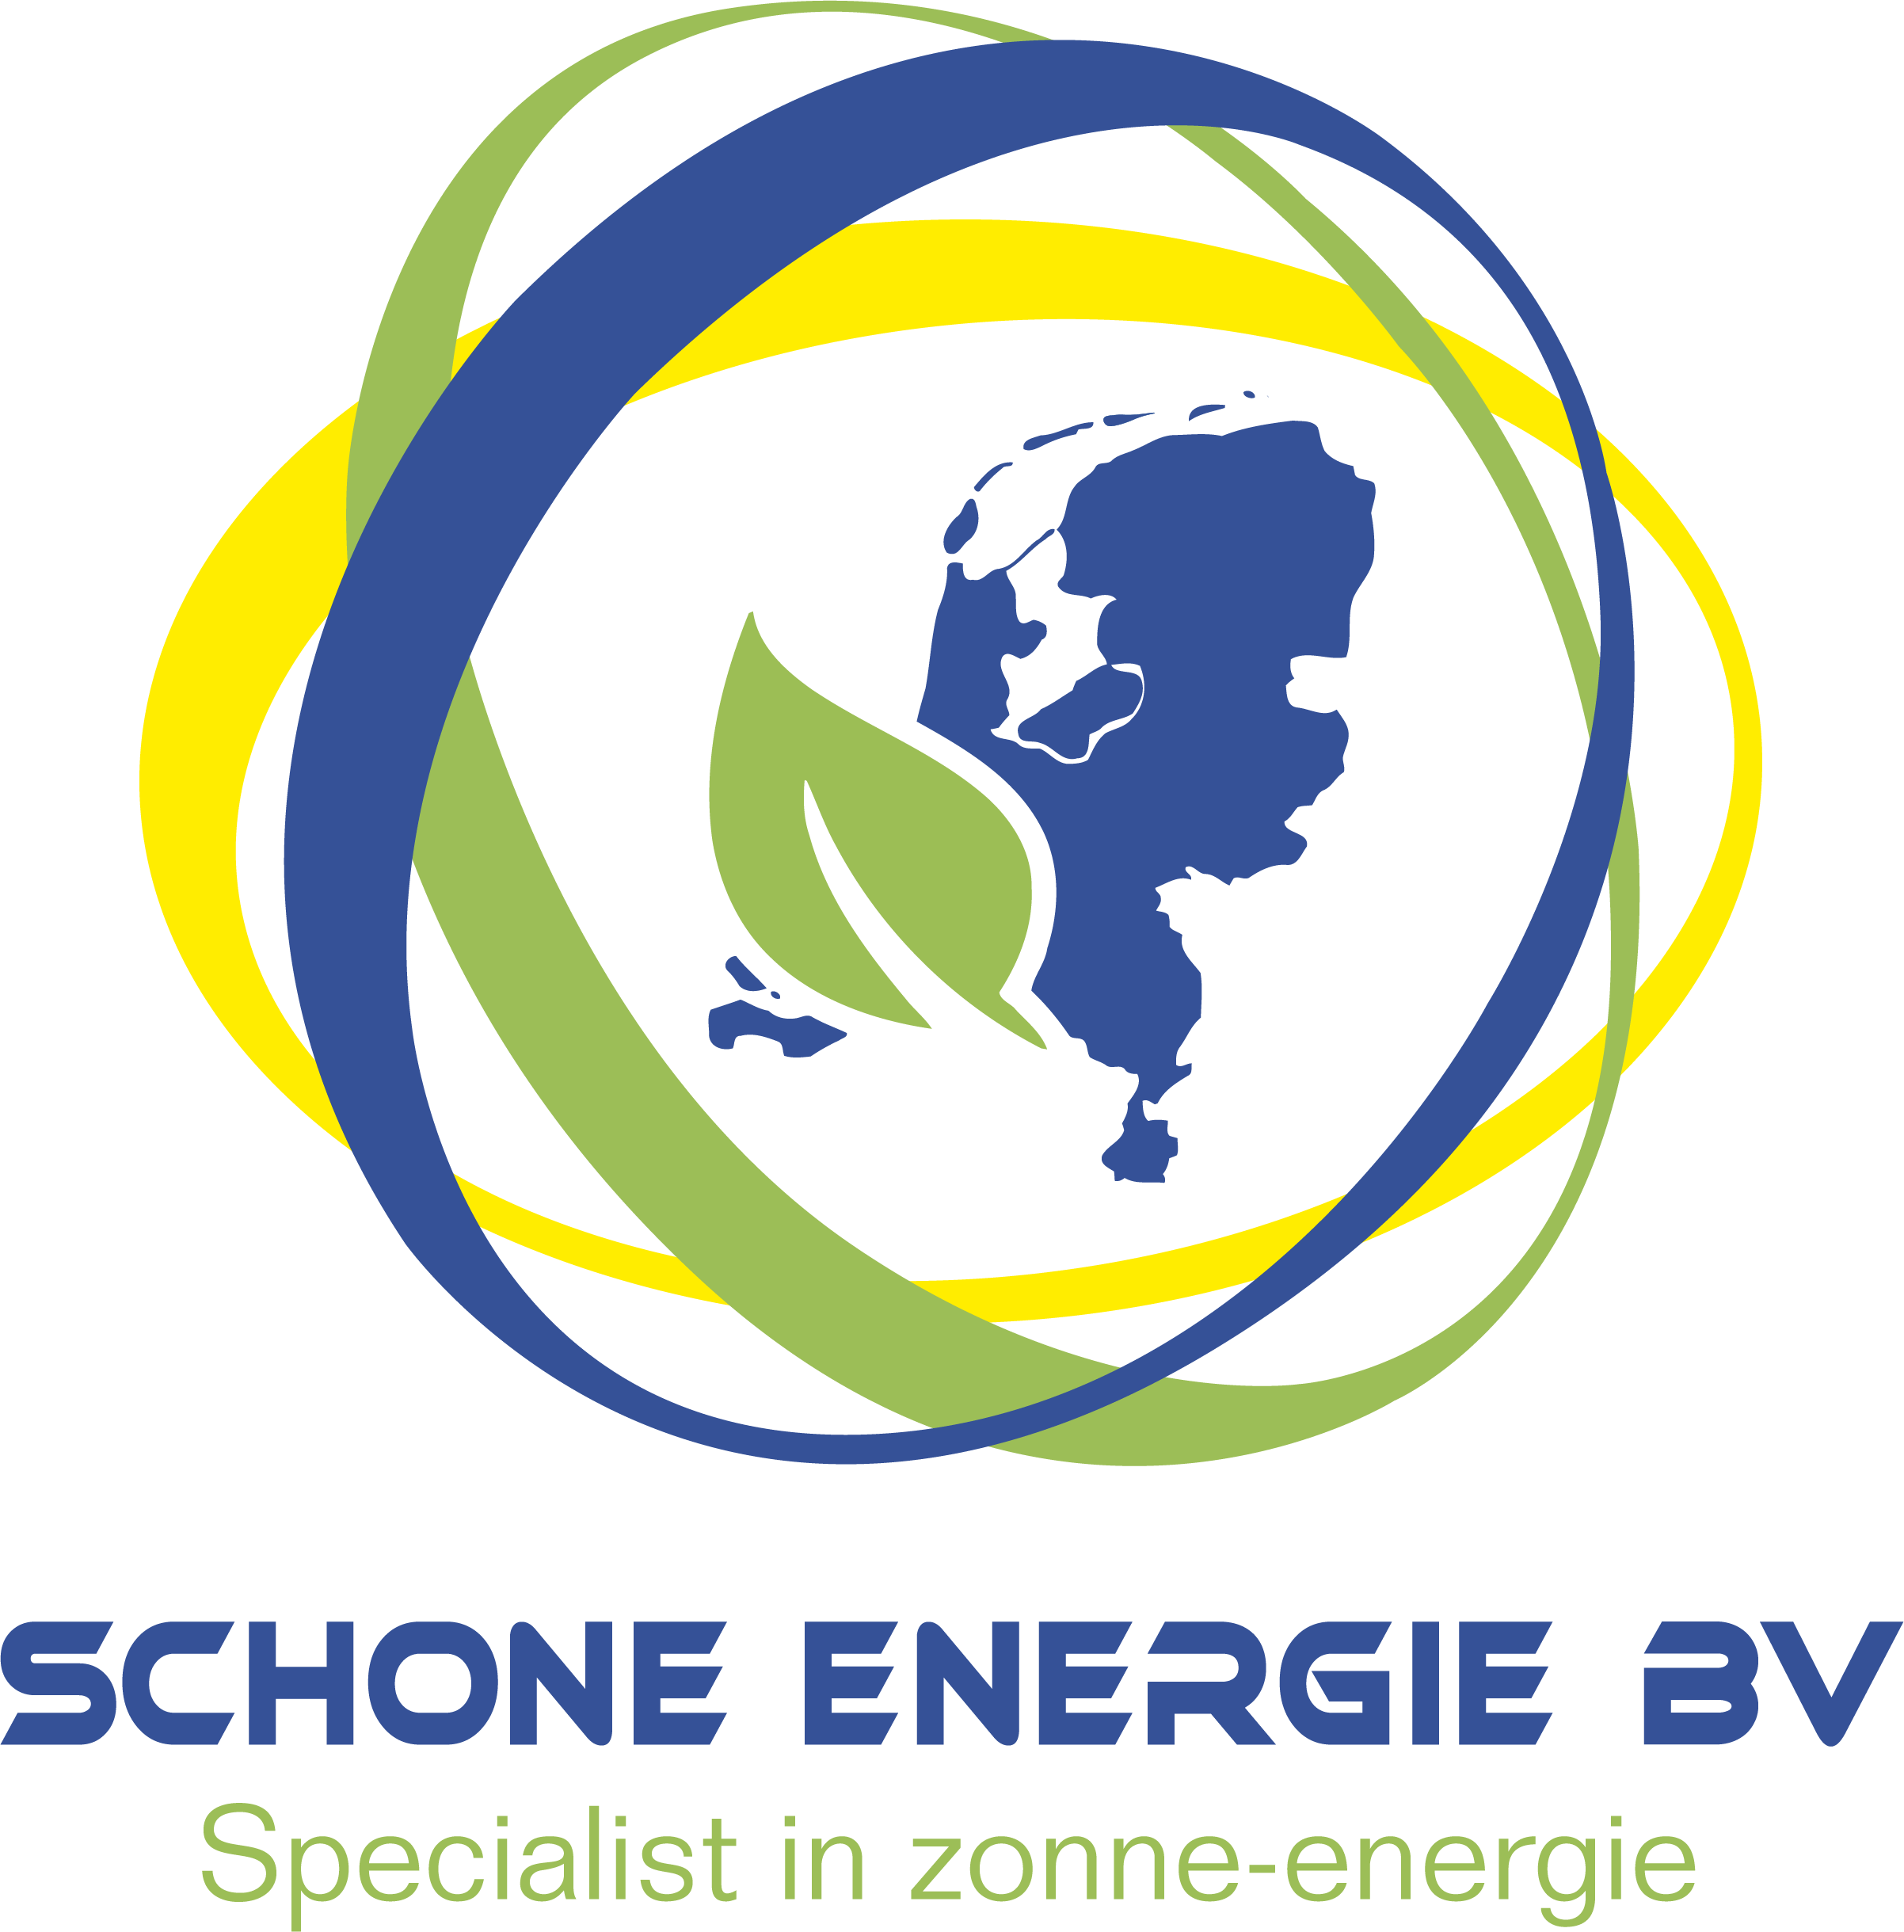 Schone Energie B.V. logo